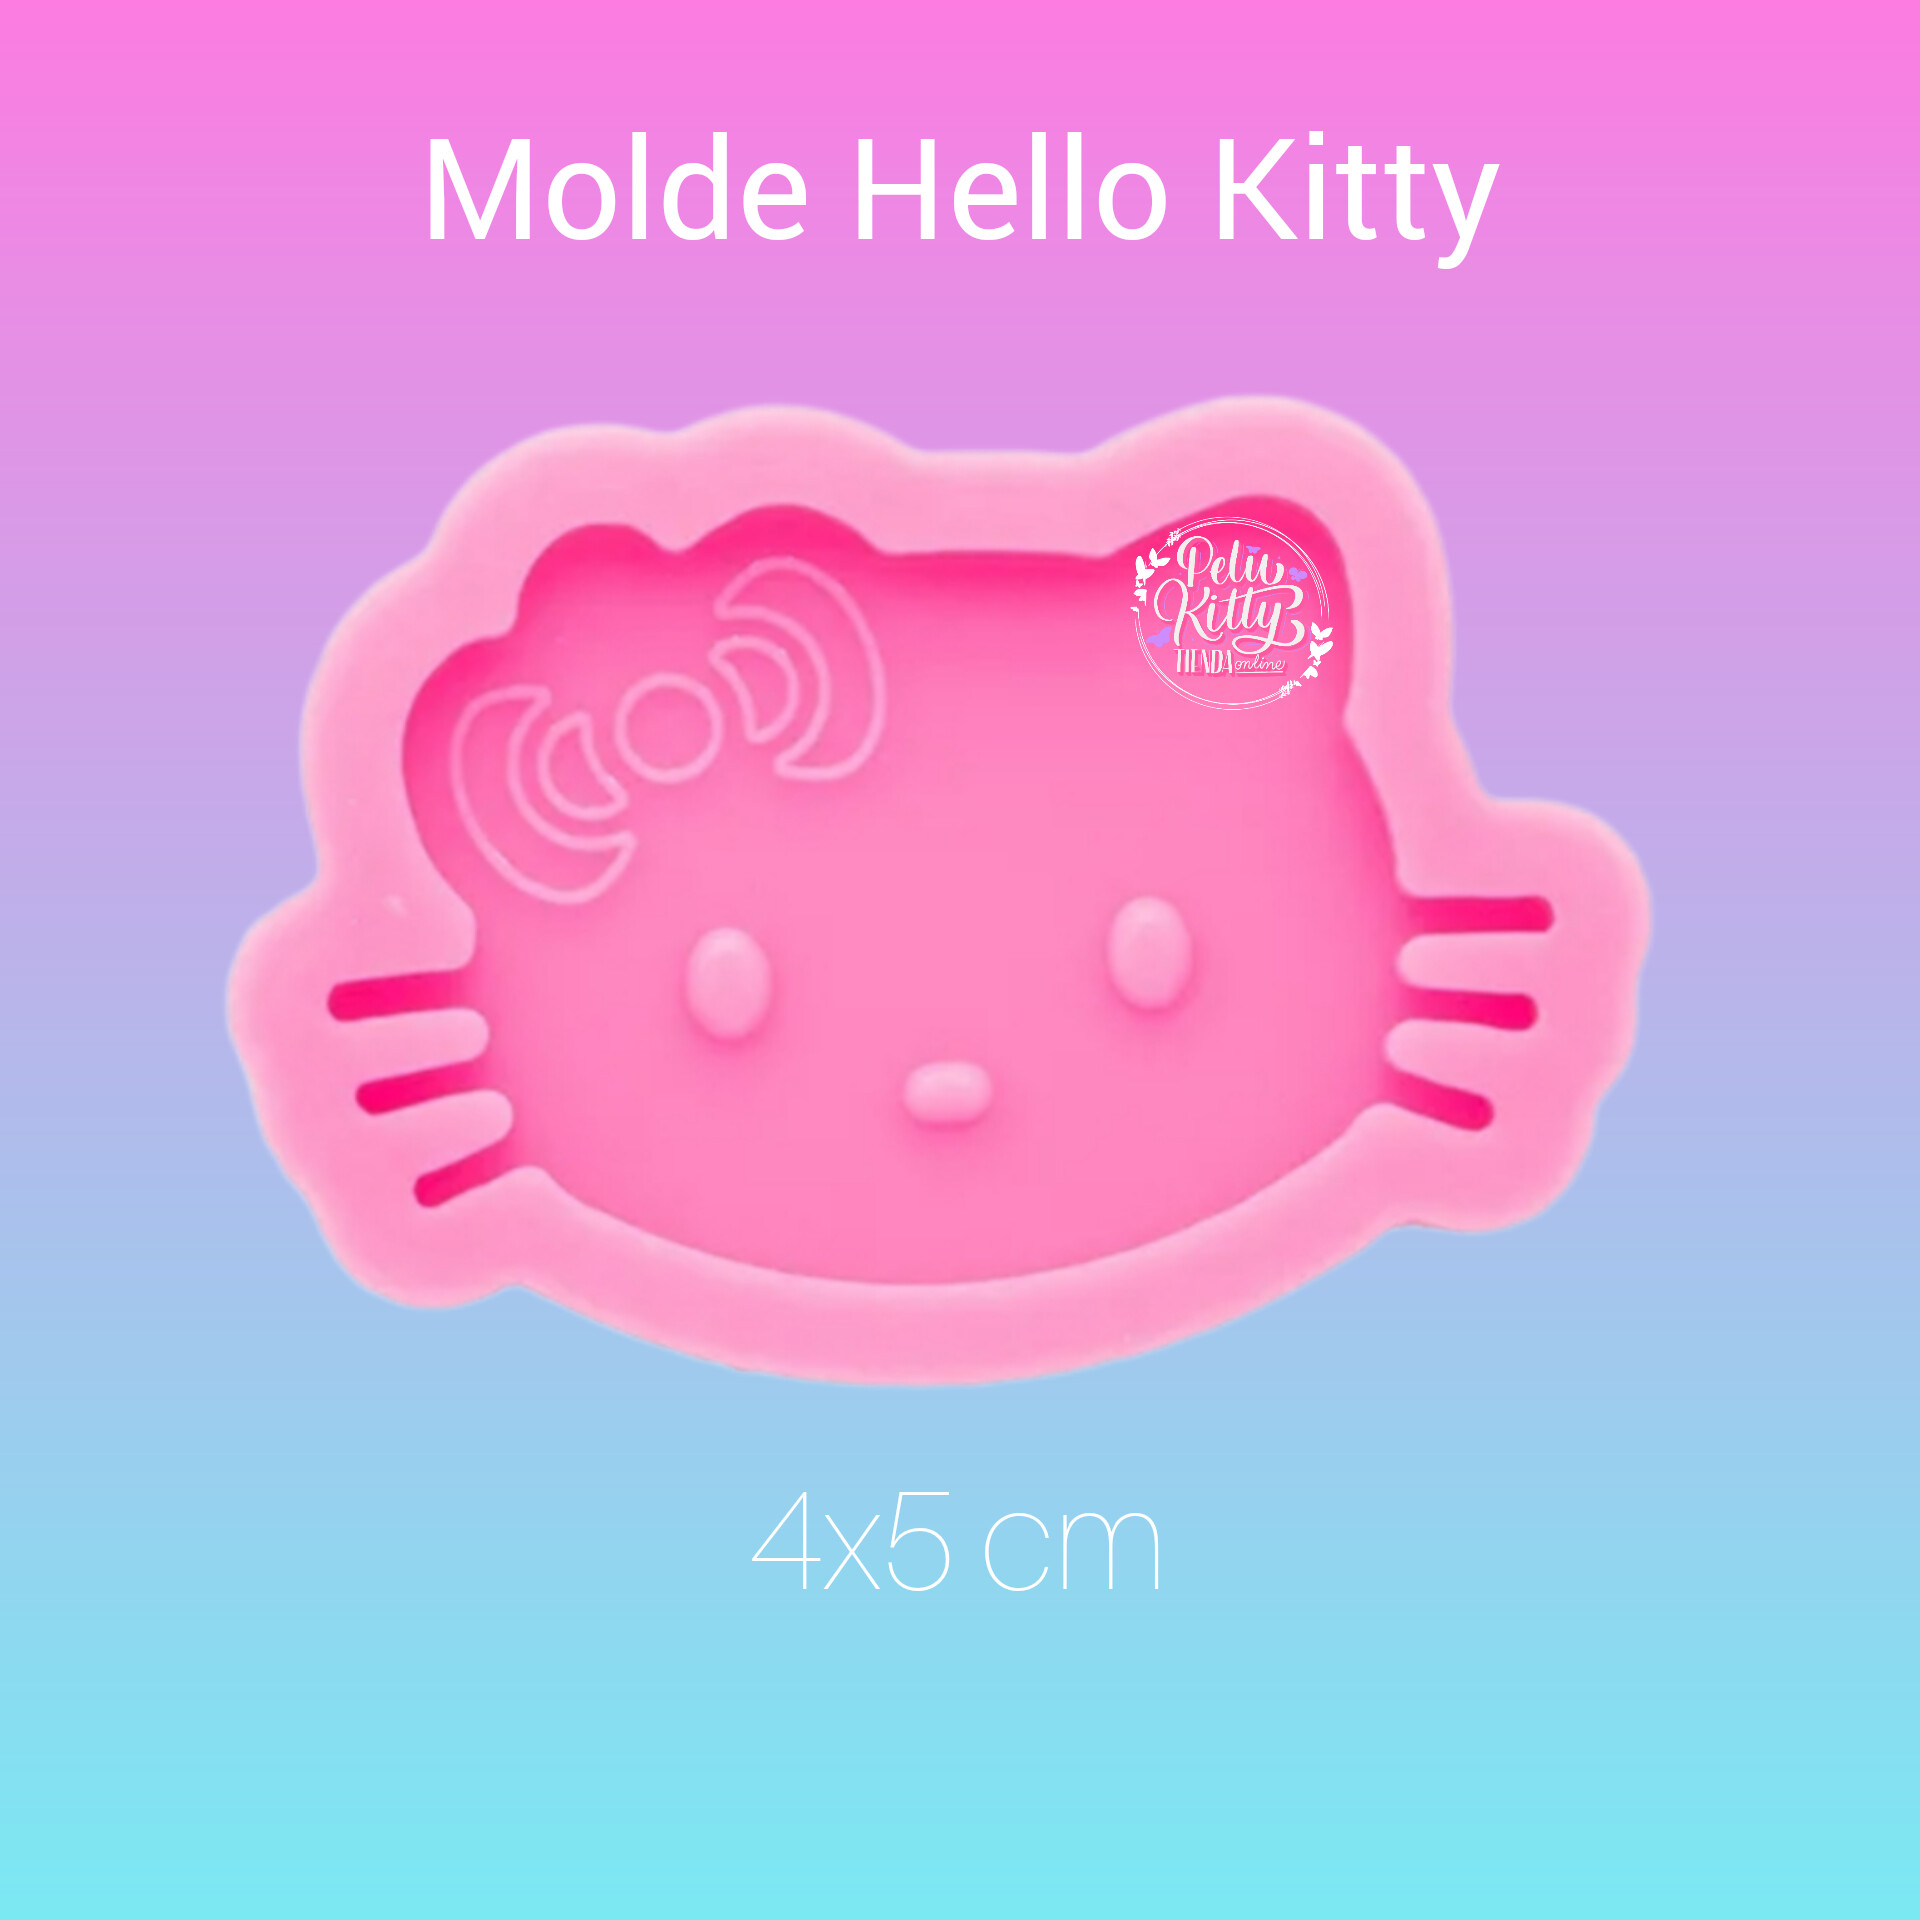 Molde Hello Kitty